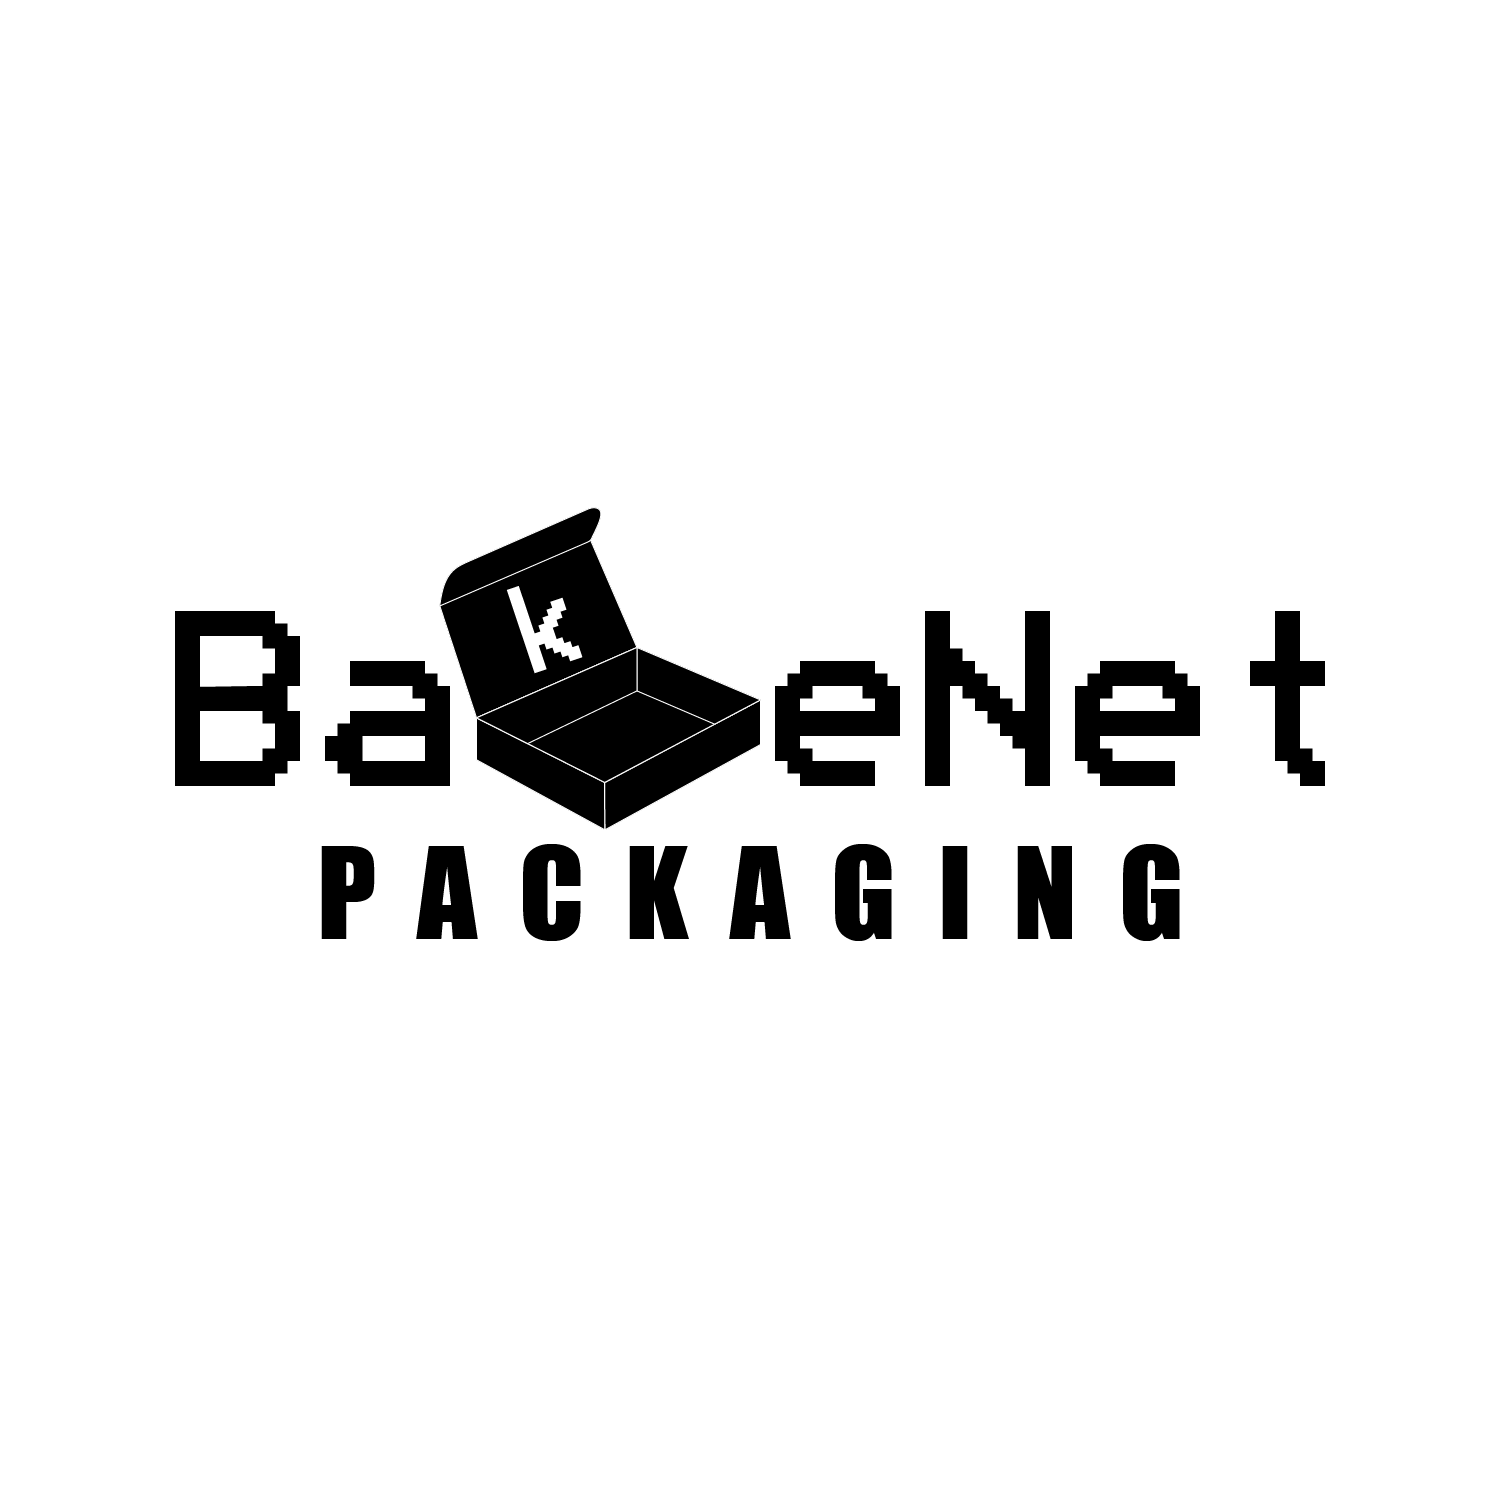 Bakenet Pte Ltd